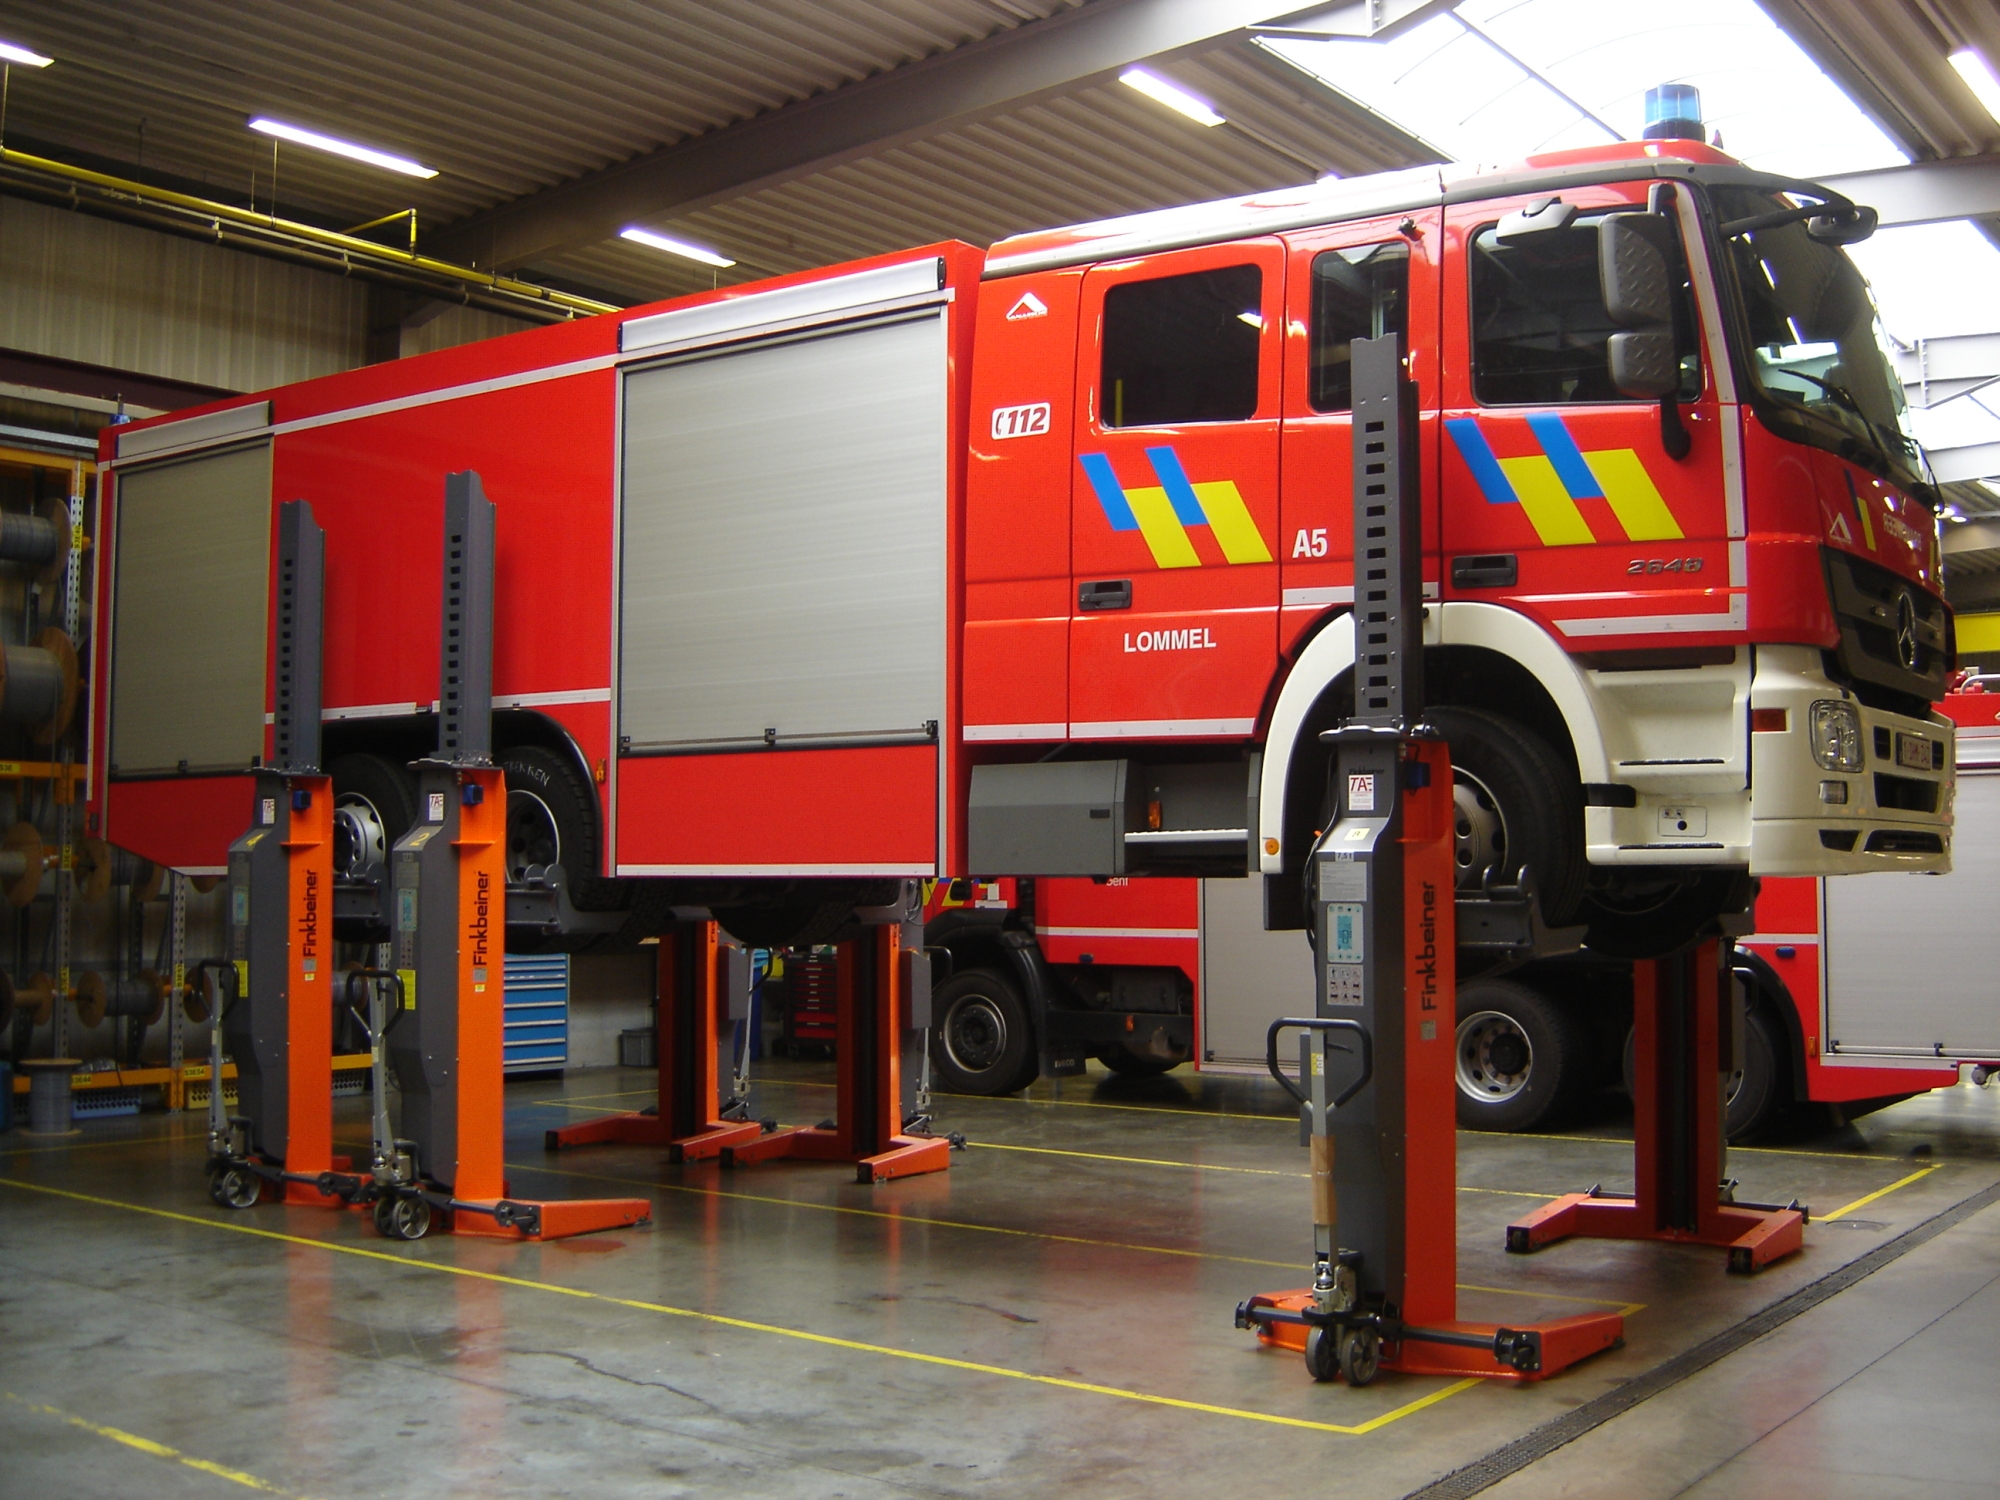 bewegliche Hebeanlage Finkbeiner EHB, für Feuerwehrfahrzeuge